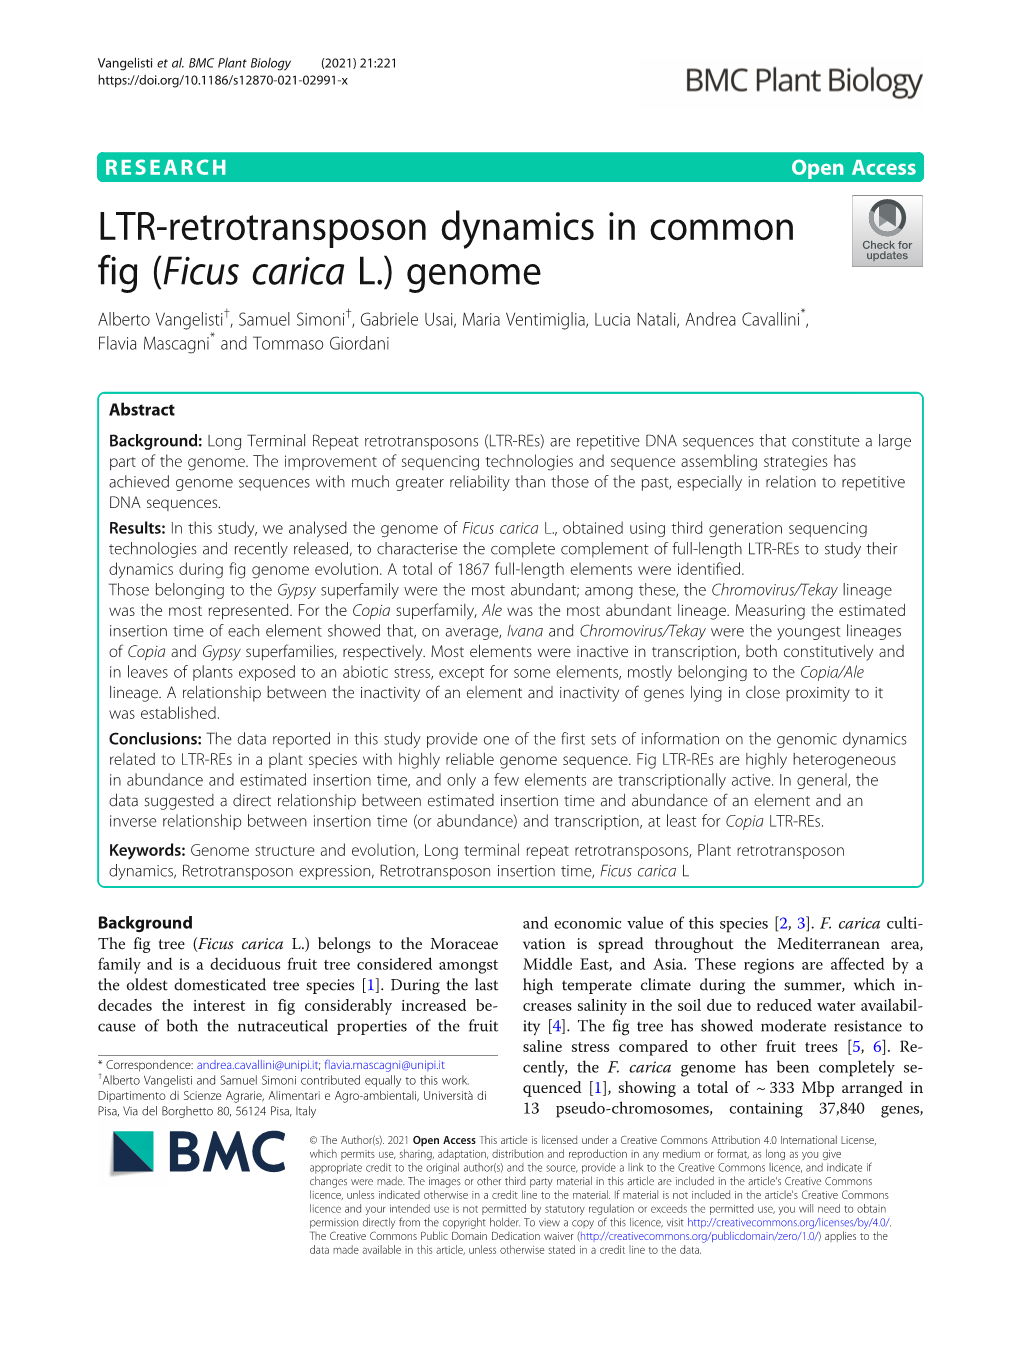 LTR-Retrotransposon Dynamics in Common Fig (Ficus Carica L.) Genome